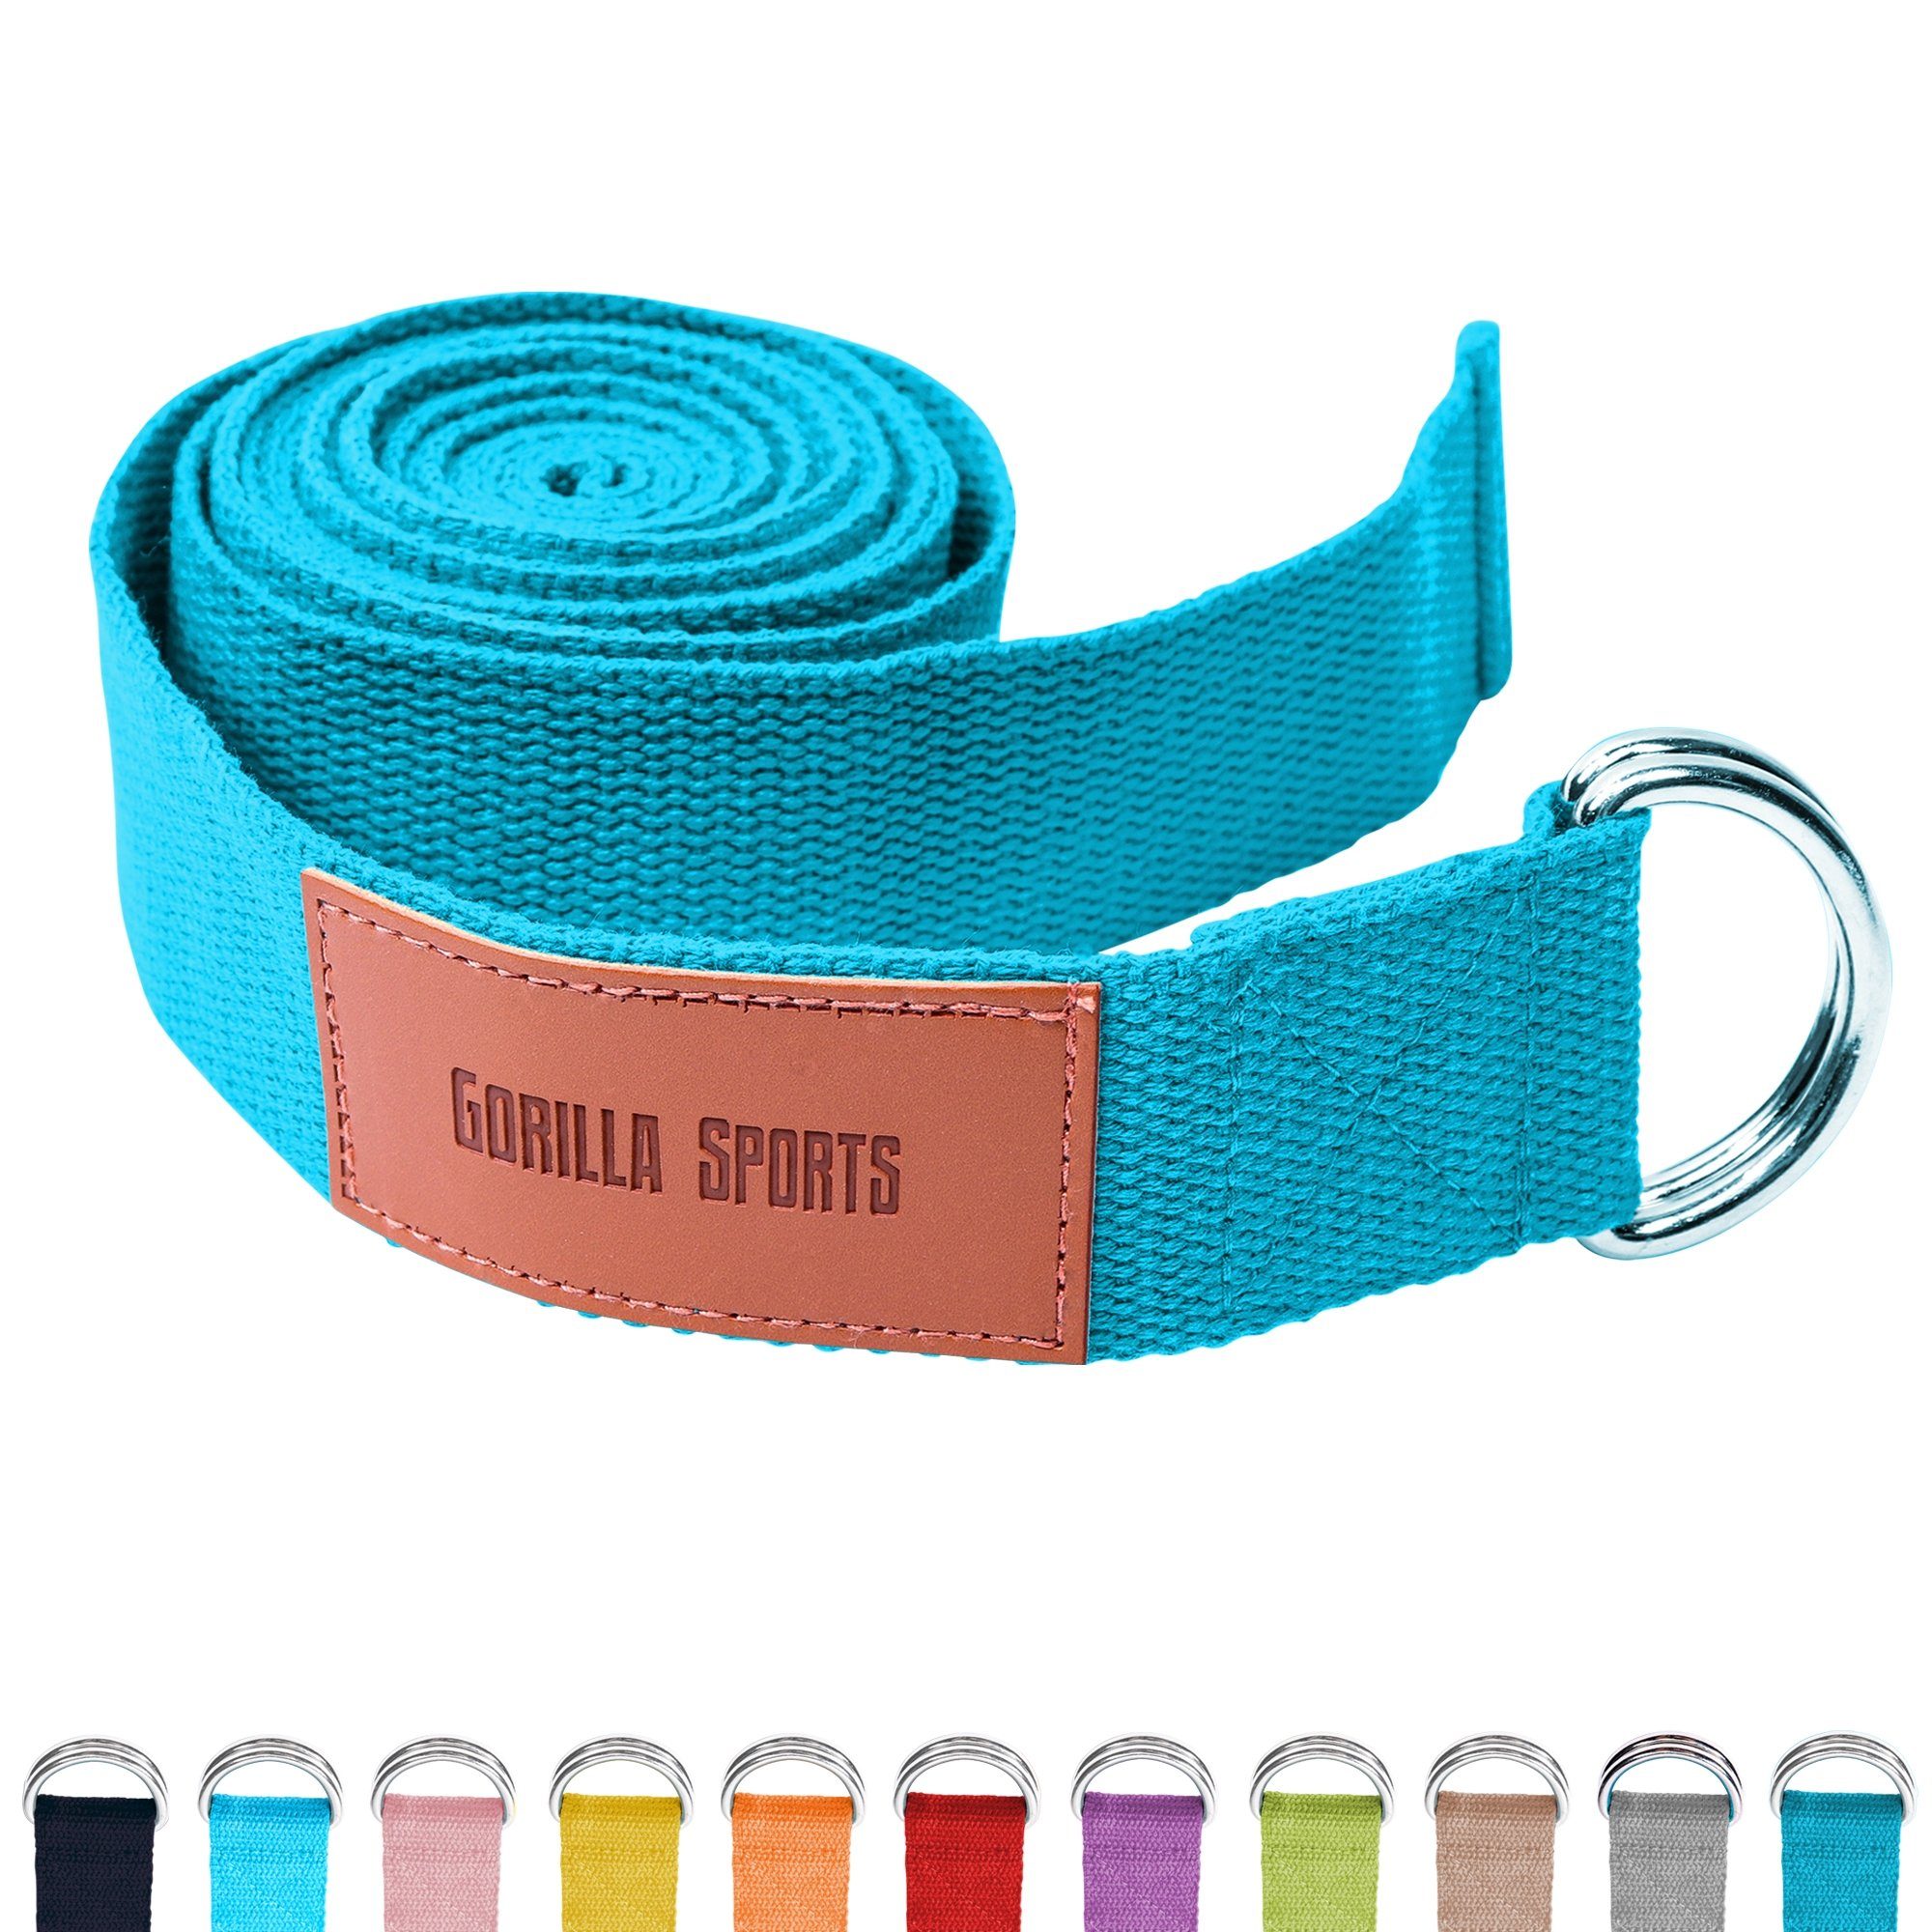 Blau aus Strap GORILLA Metall, SPORTS mit 100% Yoga-Gürtel, Yogagurt Verschluss Baumwolle, Yoga